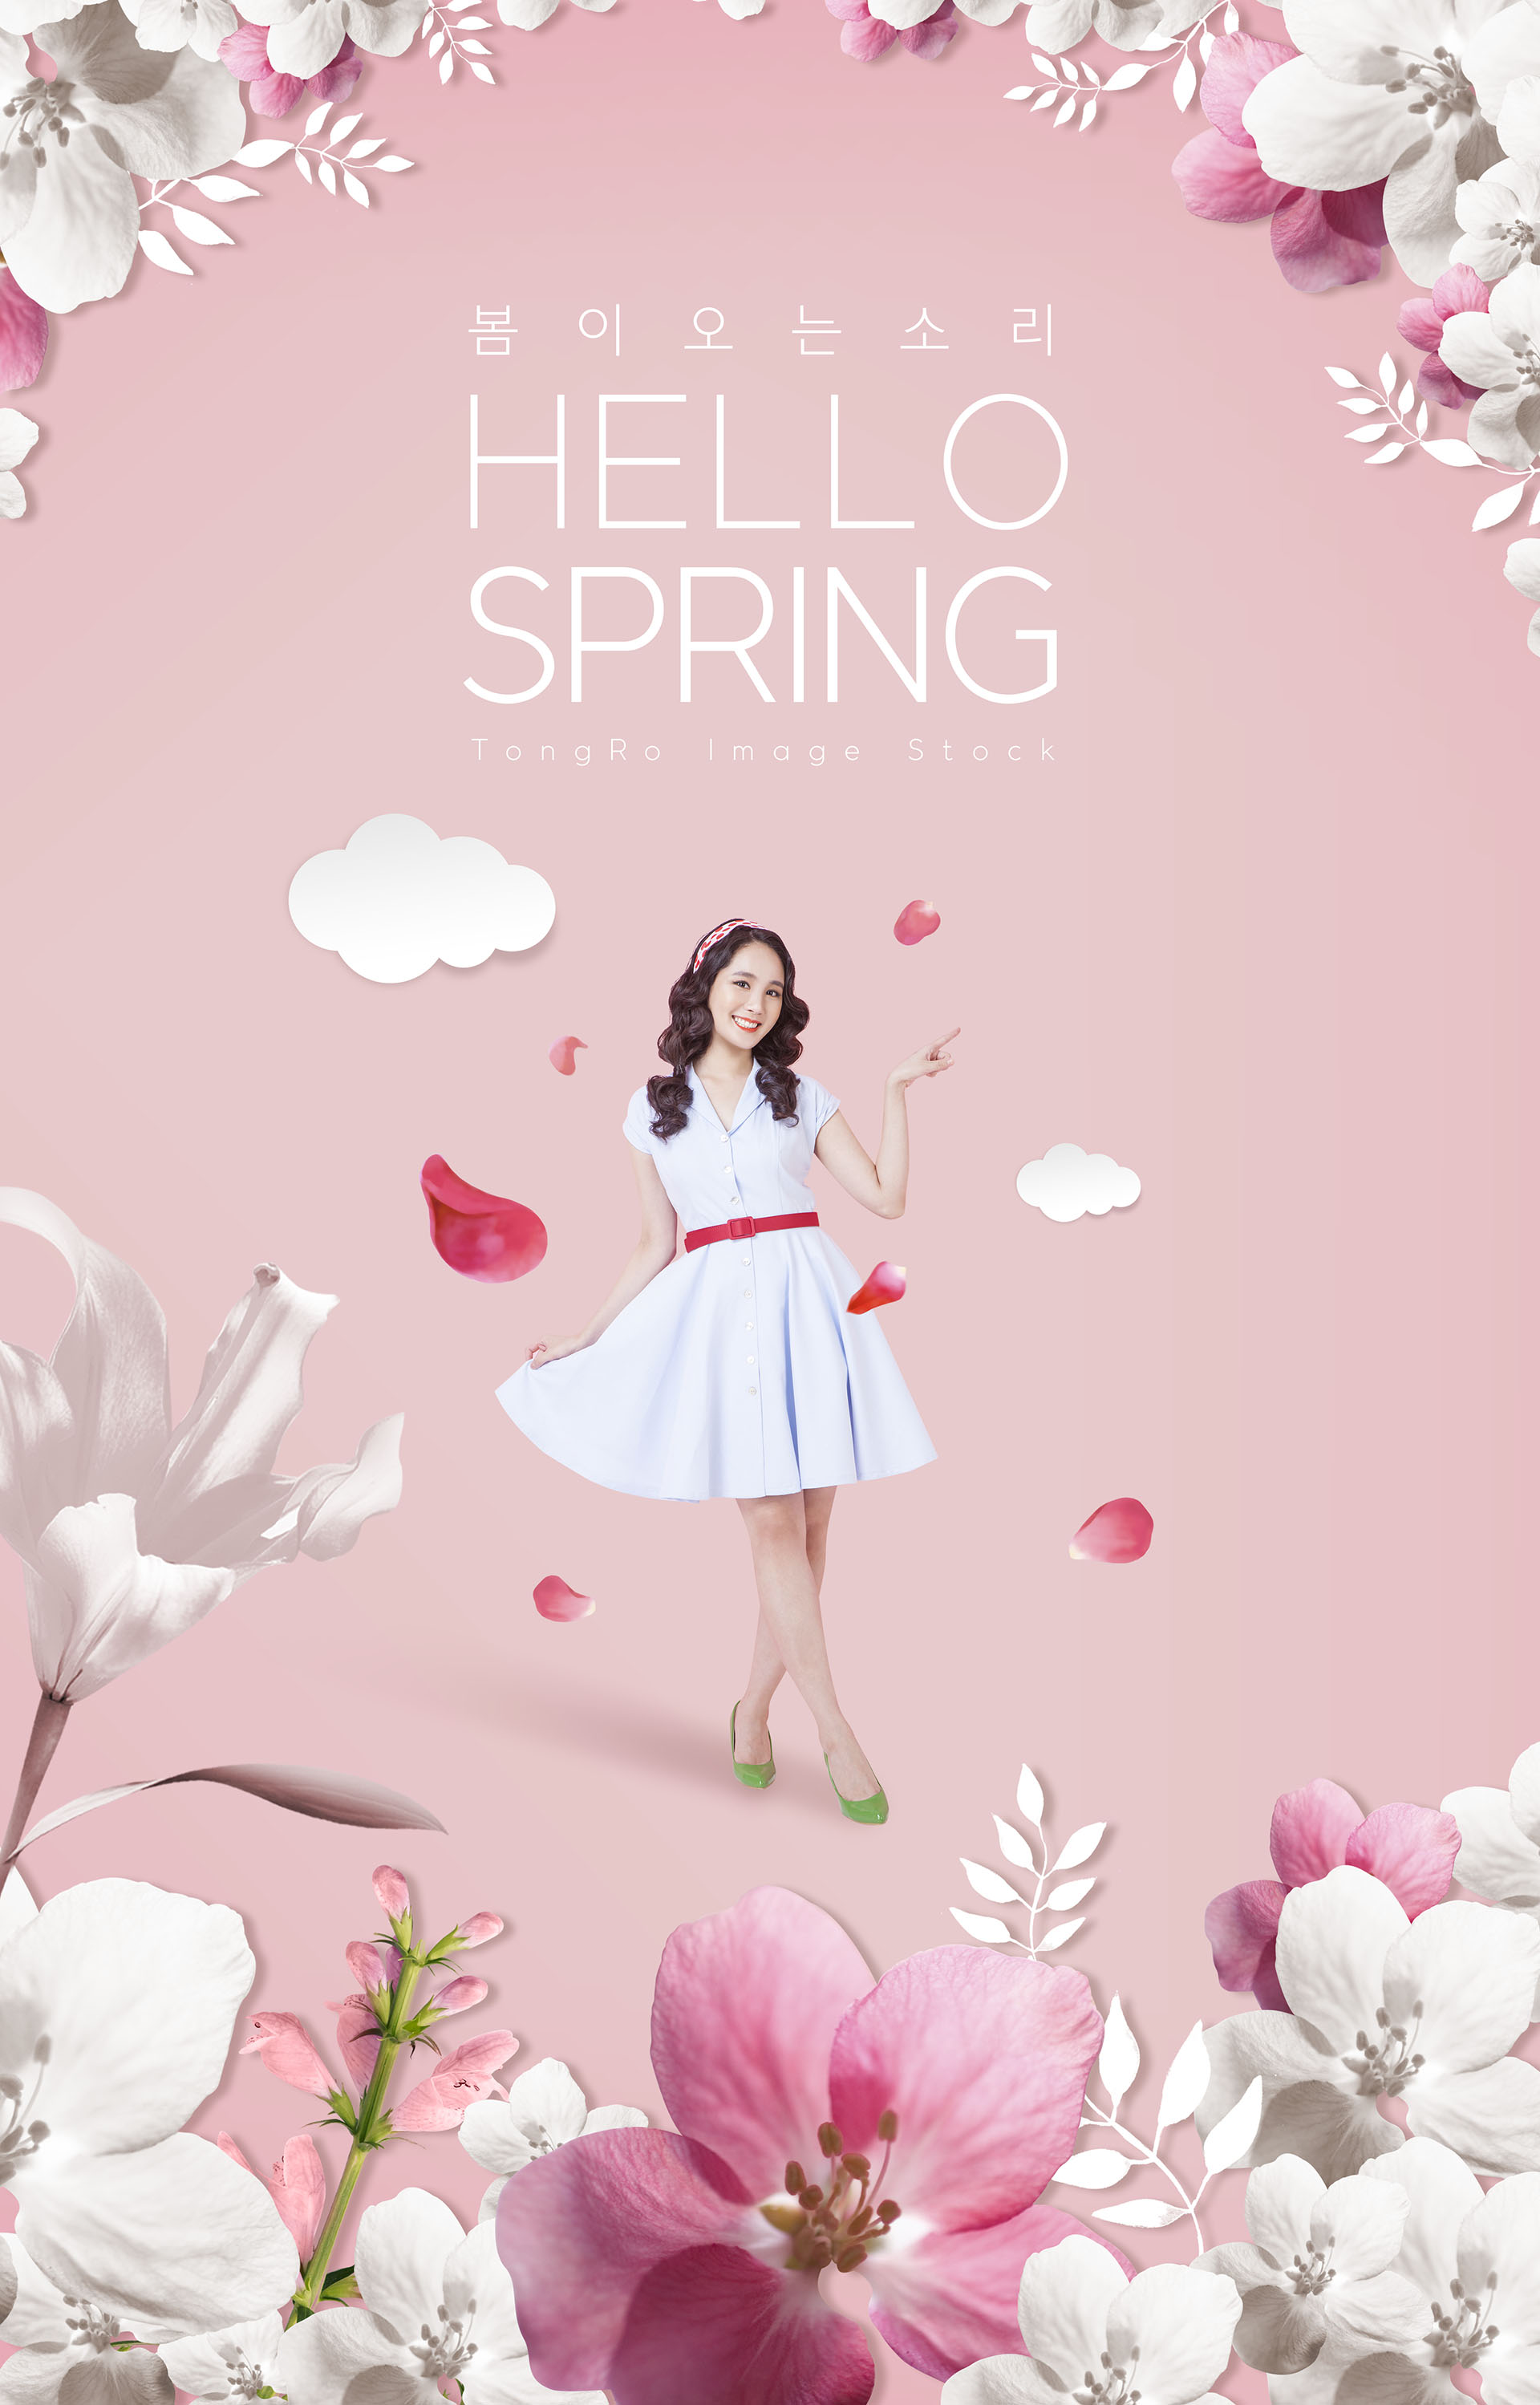 适合春季春天38节宣传的海报模板下载[PSD]插图(11)